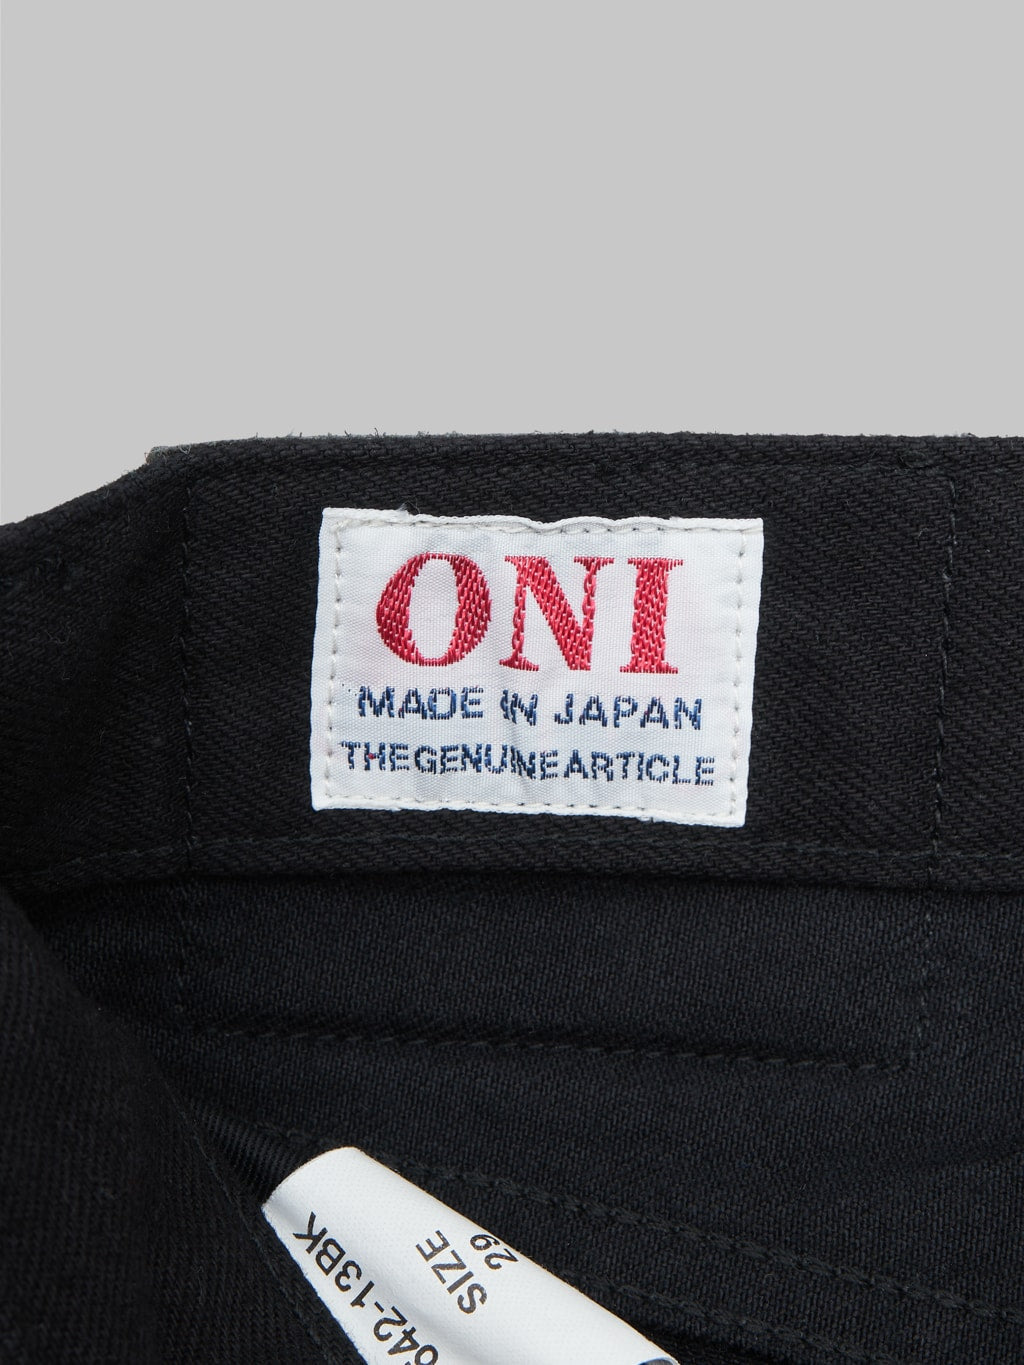 ONI Denim 642-13BK "Jet Black Denim" 13oz Relaxed Tapered Jeans